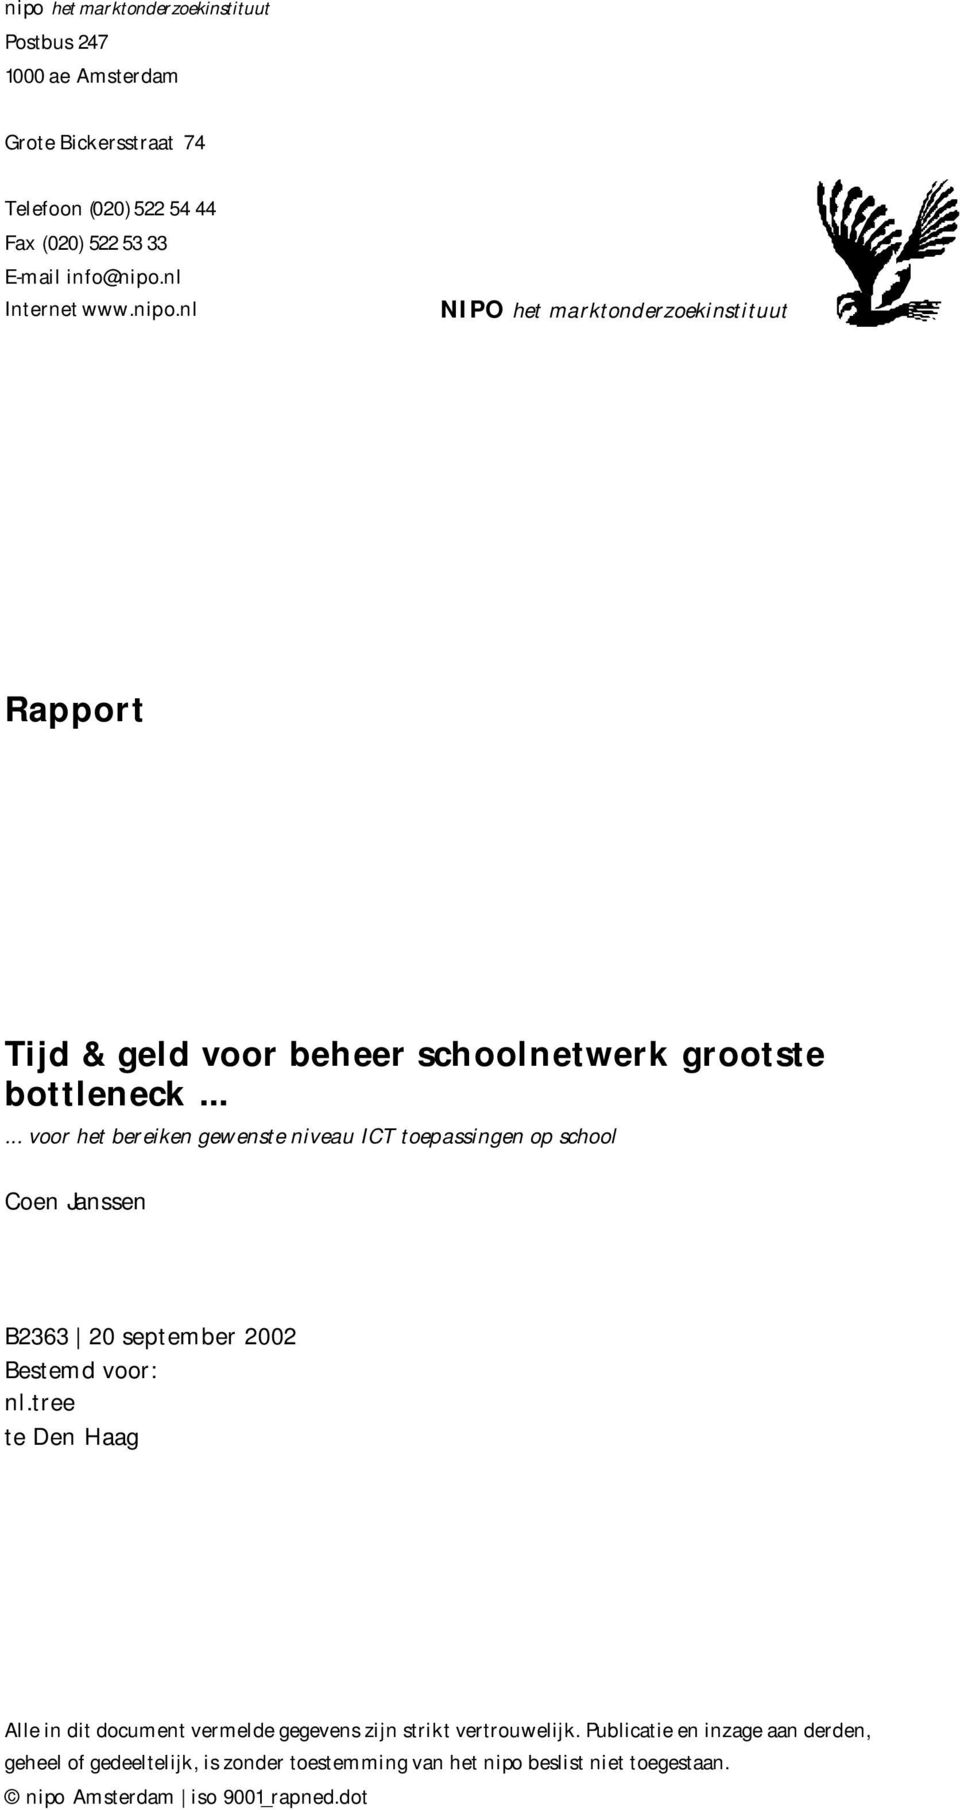 ..... voor het bereiken gewenste niveau ICT toepassingen op school Coen Janssen B2363 20 september 2002 Bestemd voor: nl.